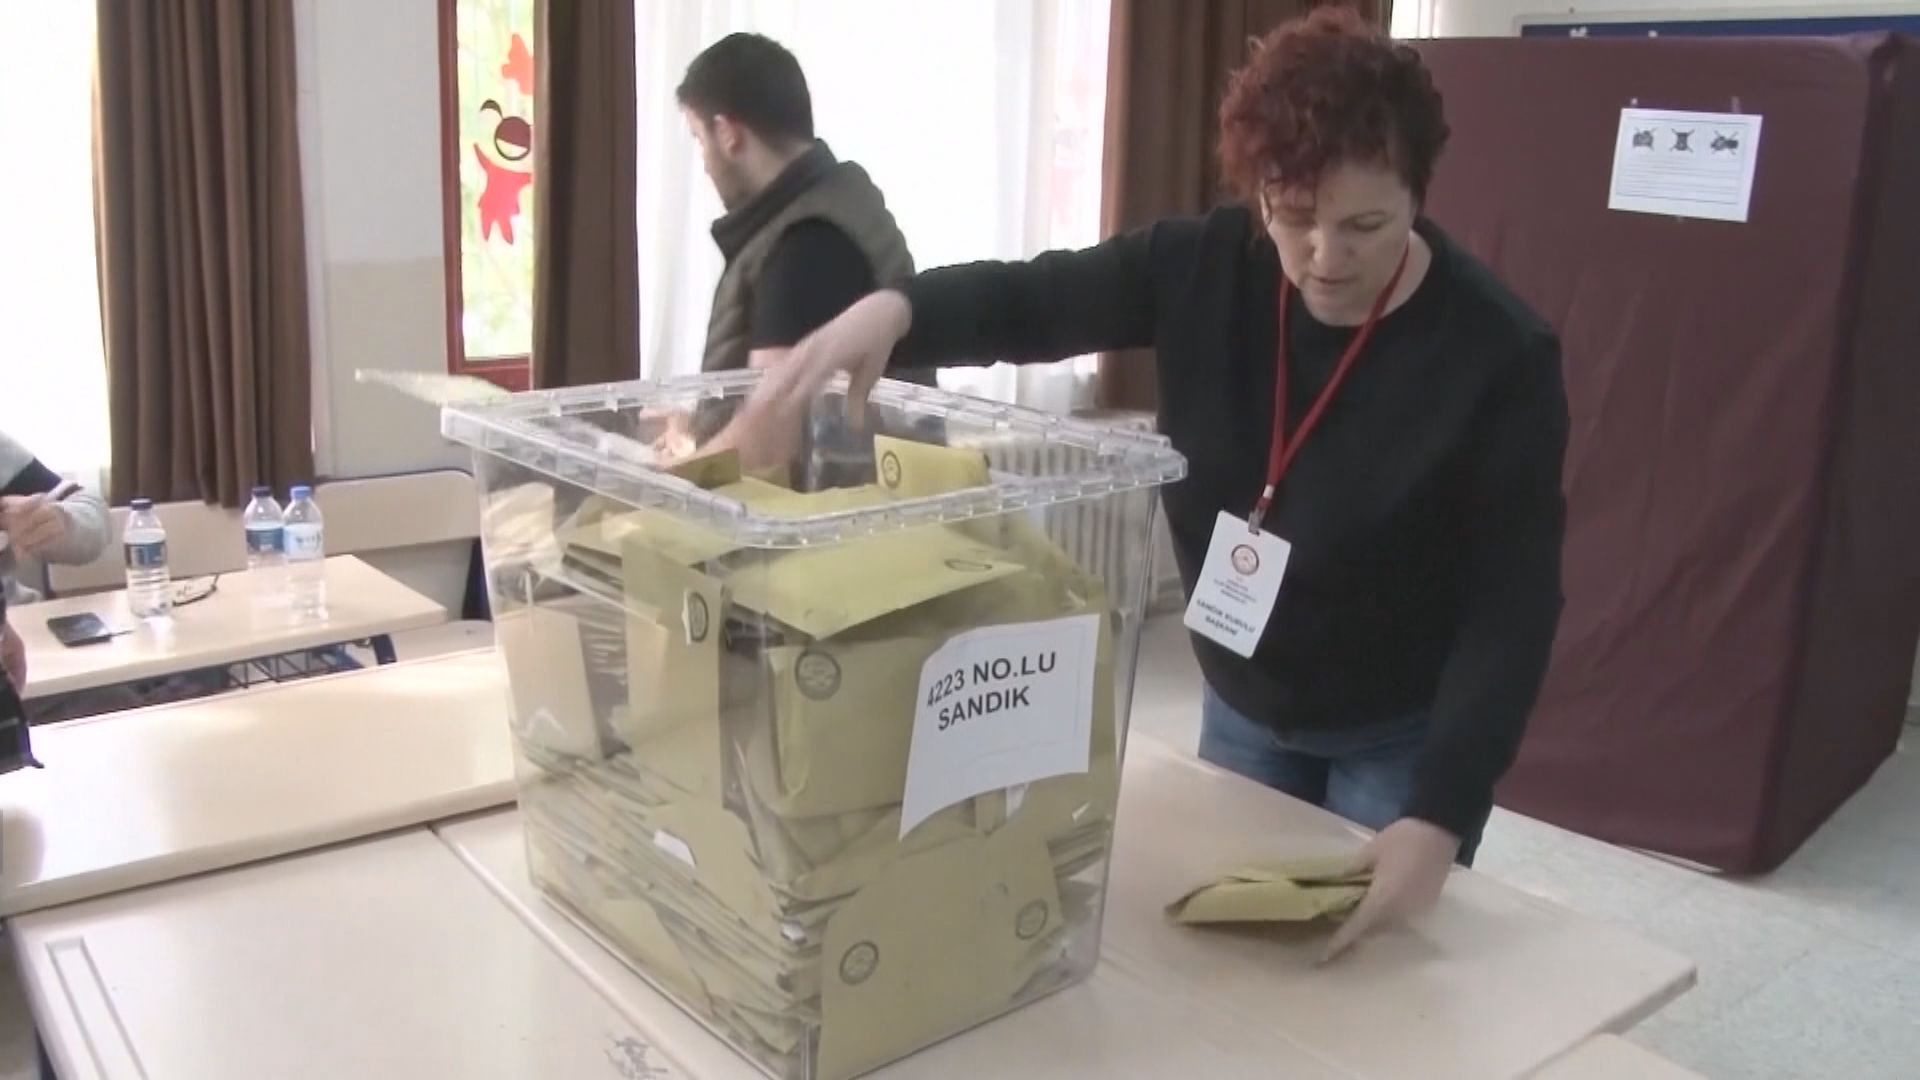 土耳其大選已點算逾九成選票 初步結果無人得票過半需舉行次輪投票